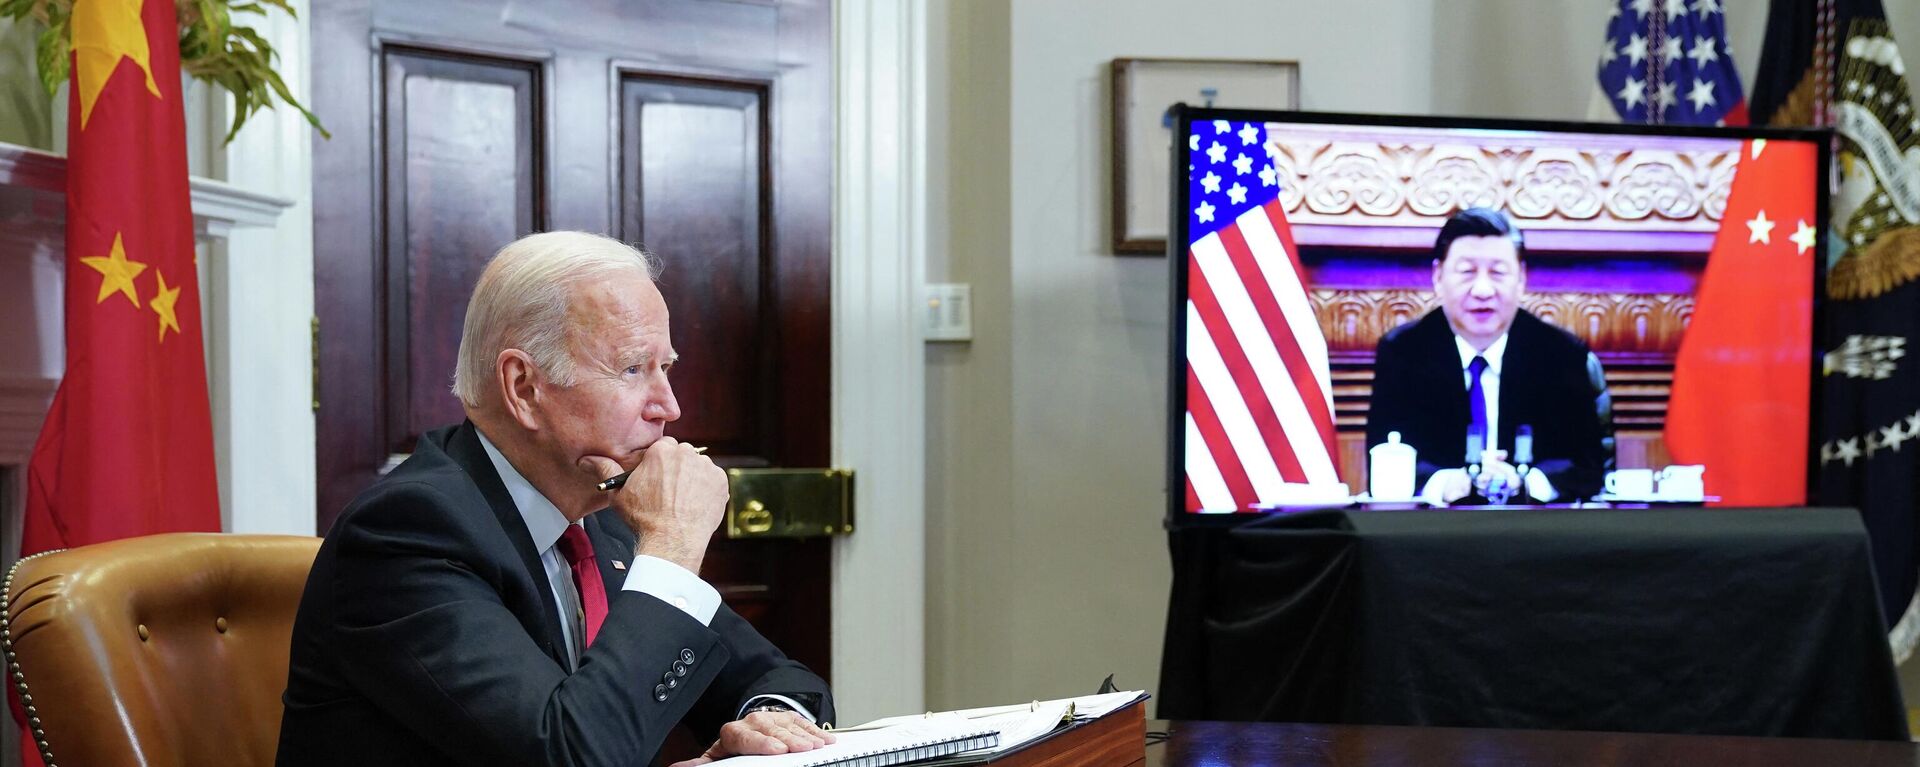 Онлайн встреча президента США Джо Байдена и президента Китая Си Цзиньпина. Архивное фото - Sputnik Кыргызстан, 1920, 29.07.2022